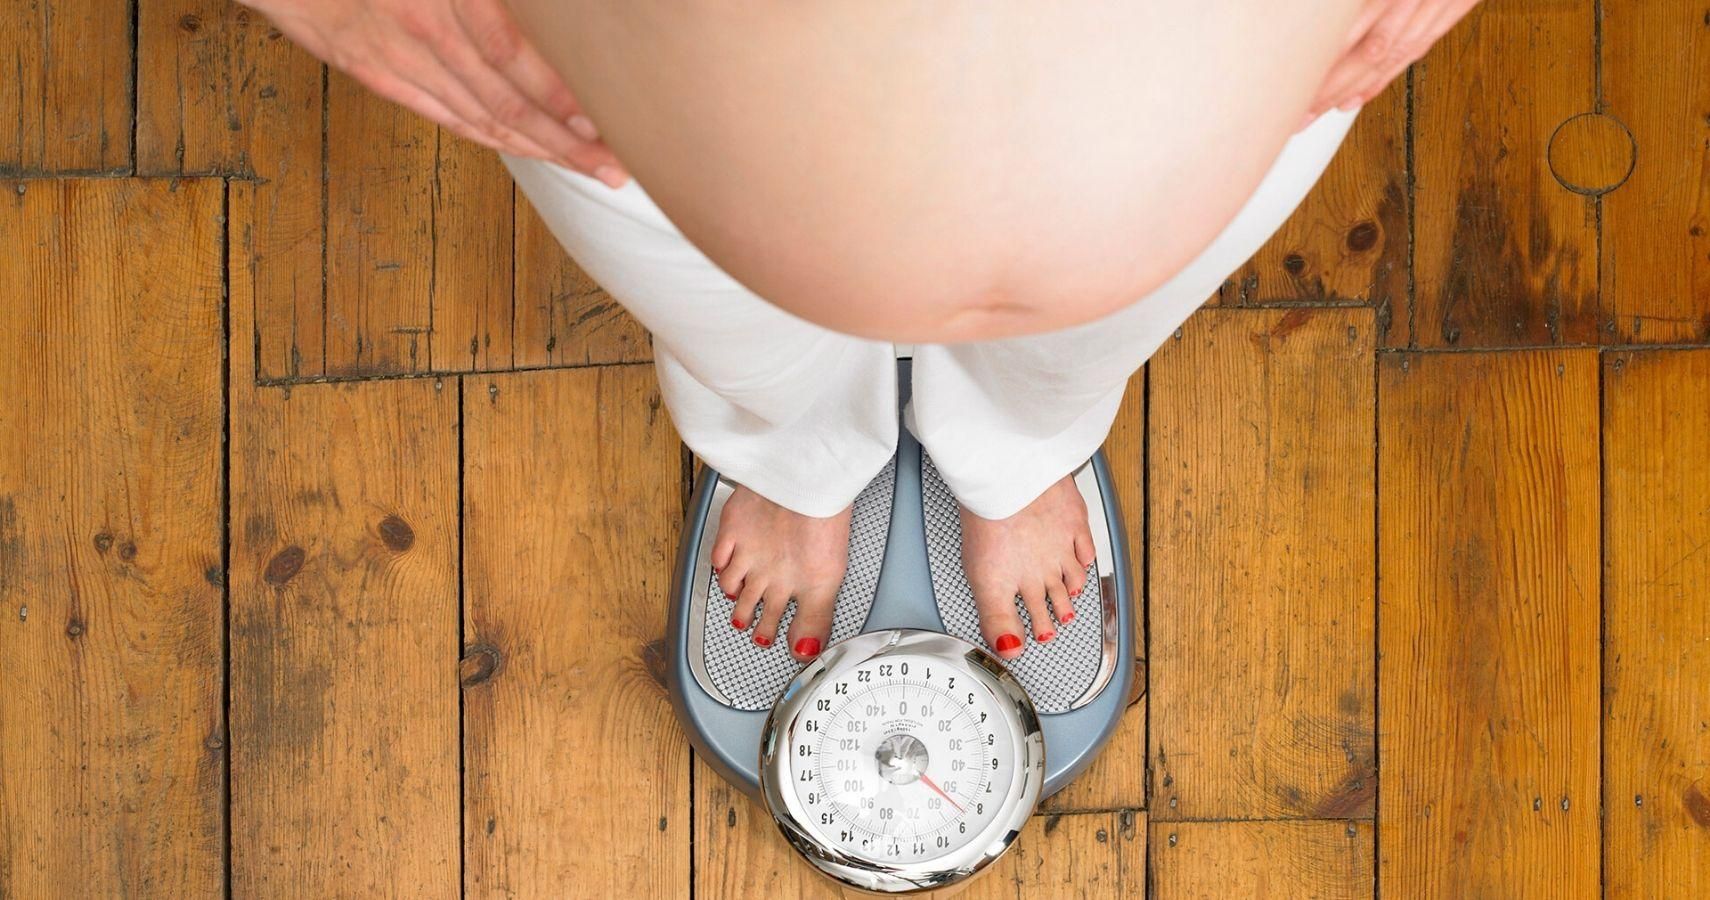 Набор веса во время беременности может стать причиной аллергии у ребенка